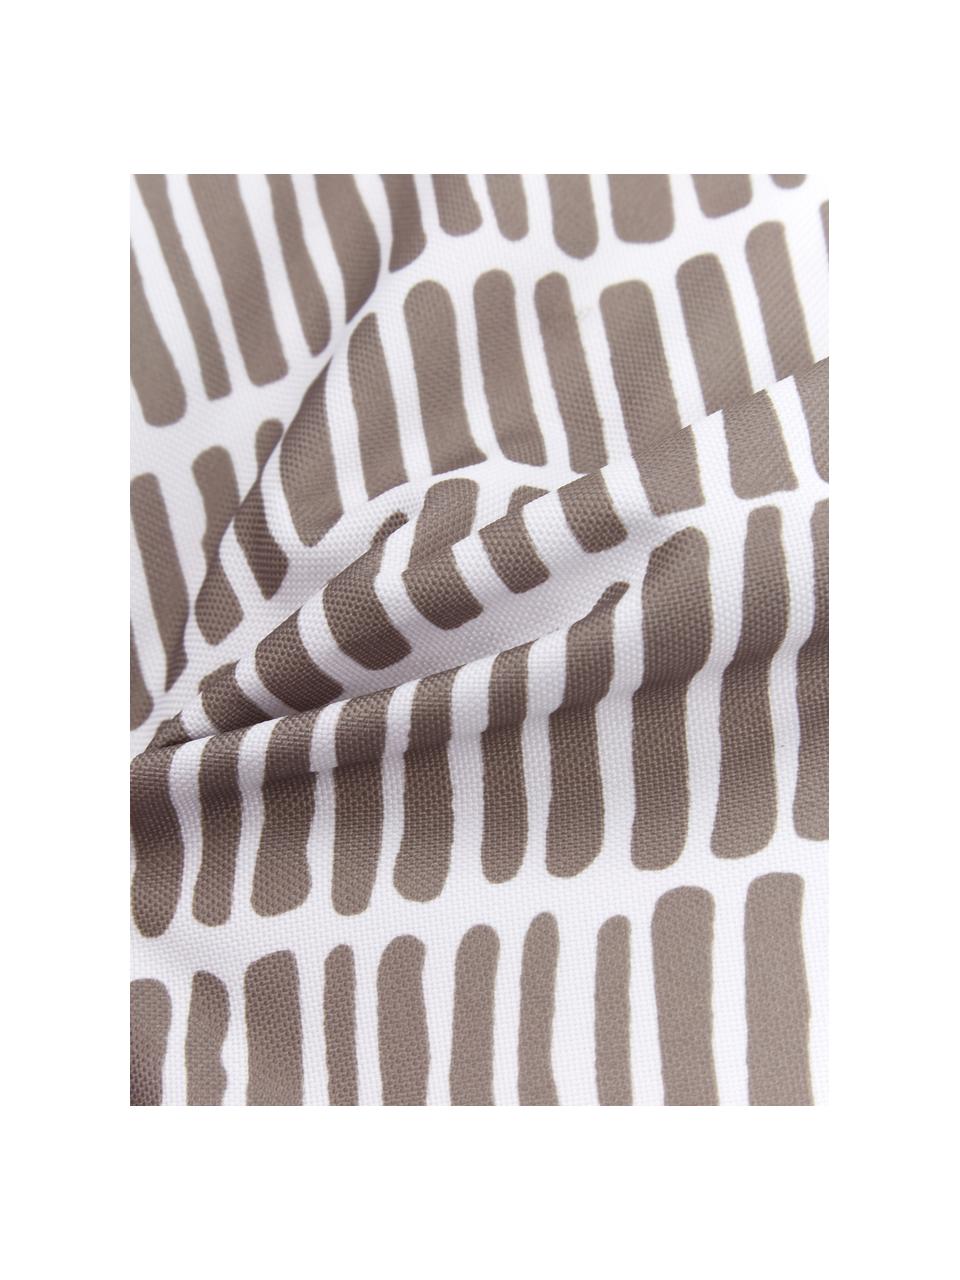 Poduszka zewnętrzna z wypełnieniem Little Stripe, 100% poliester, Biały, taupe, S 47 x D 47 cm